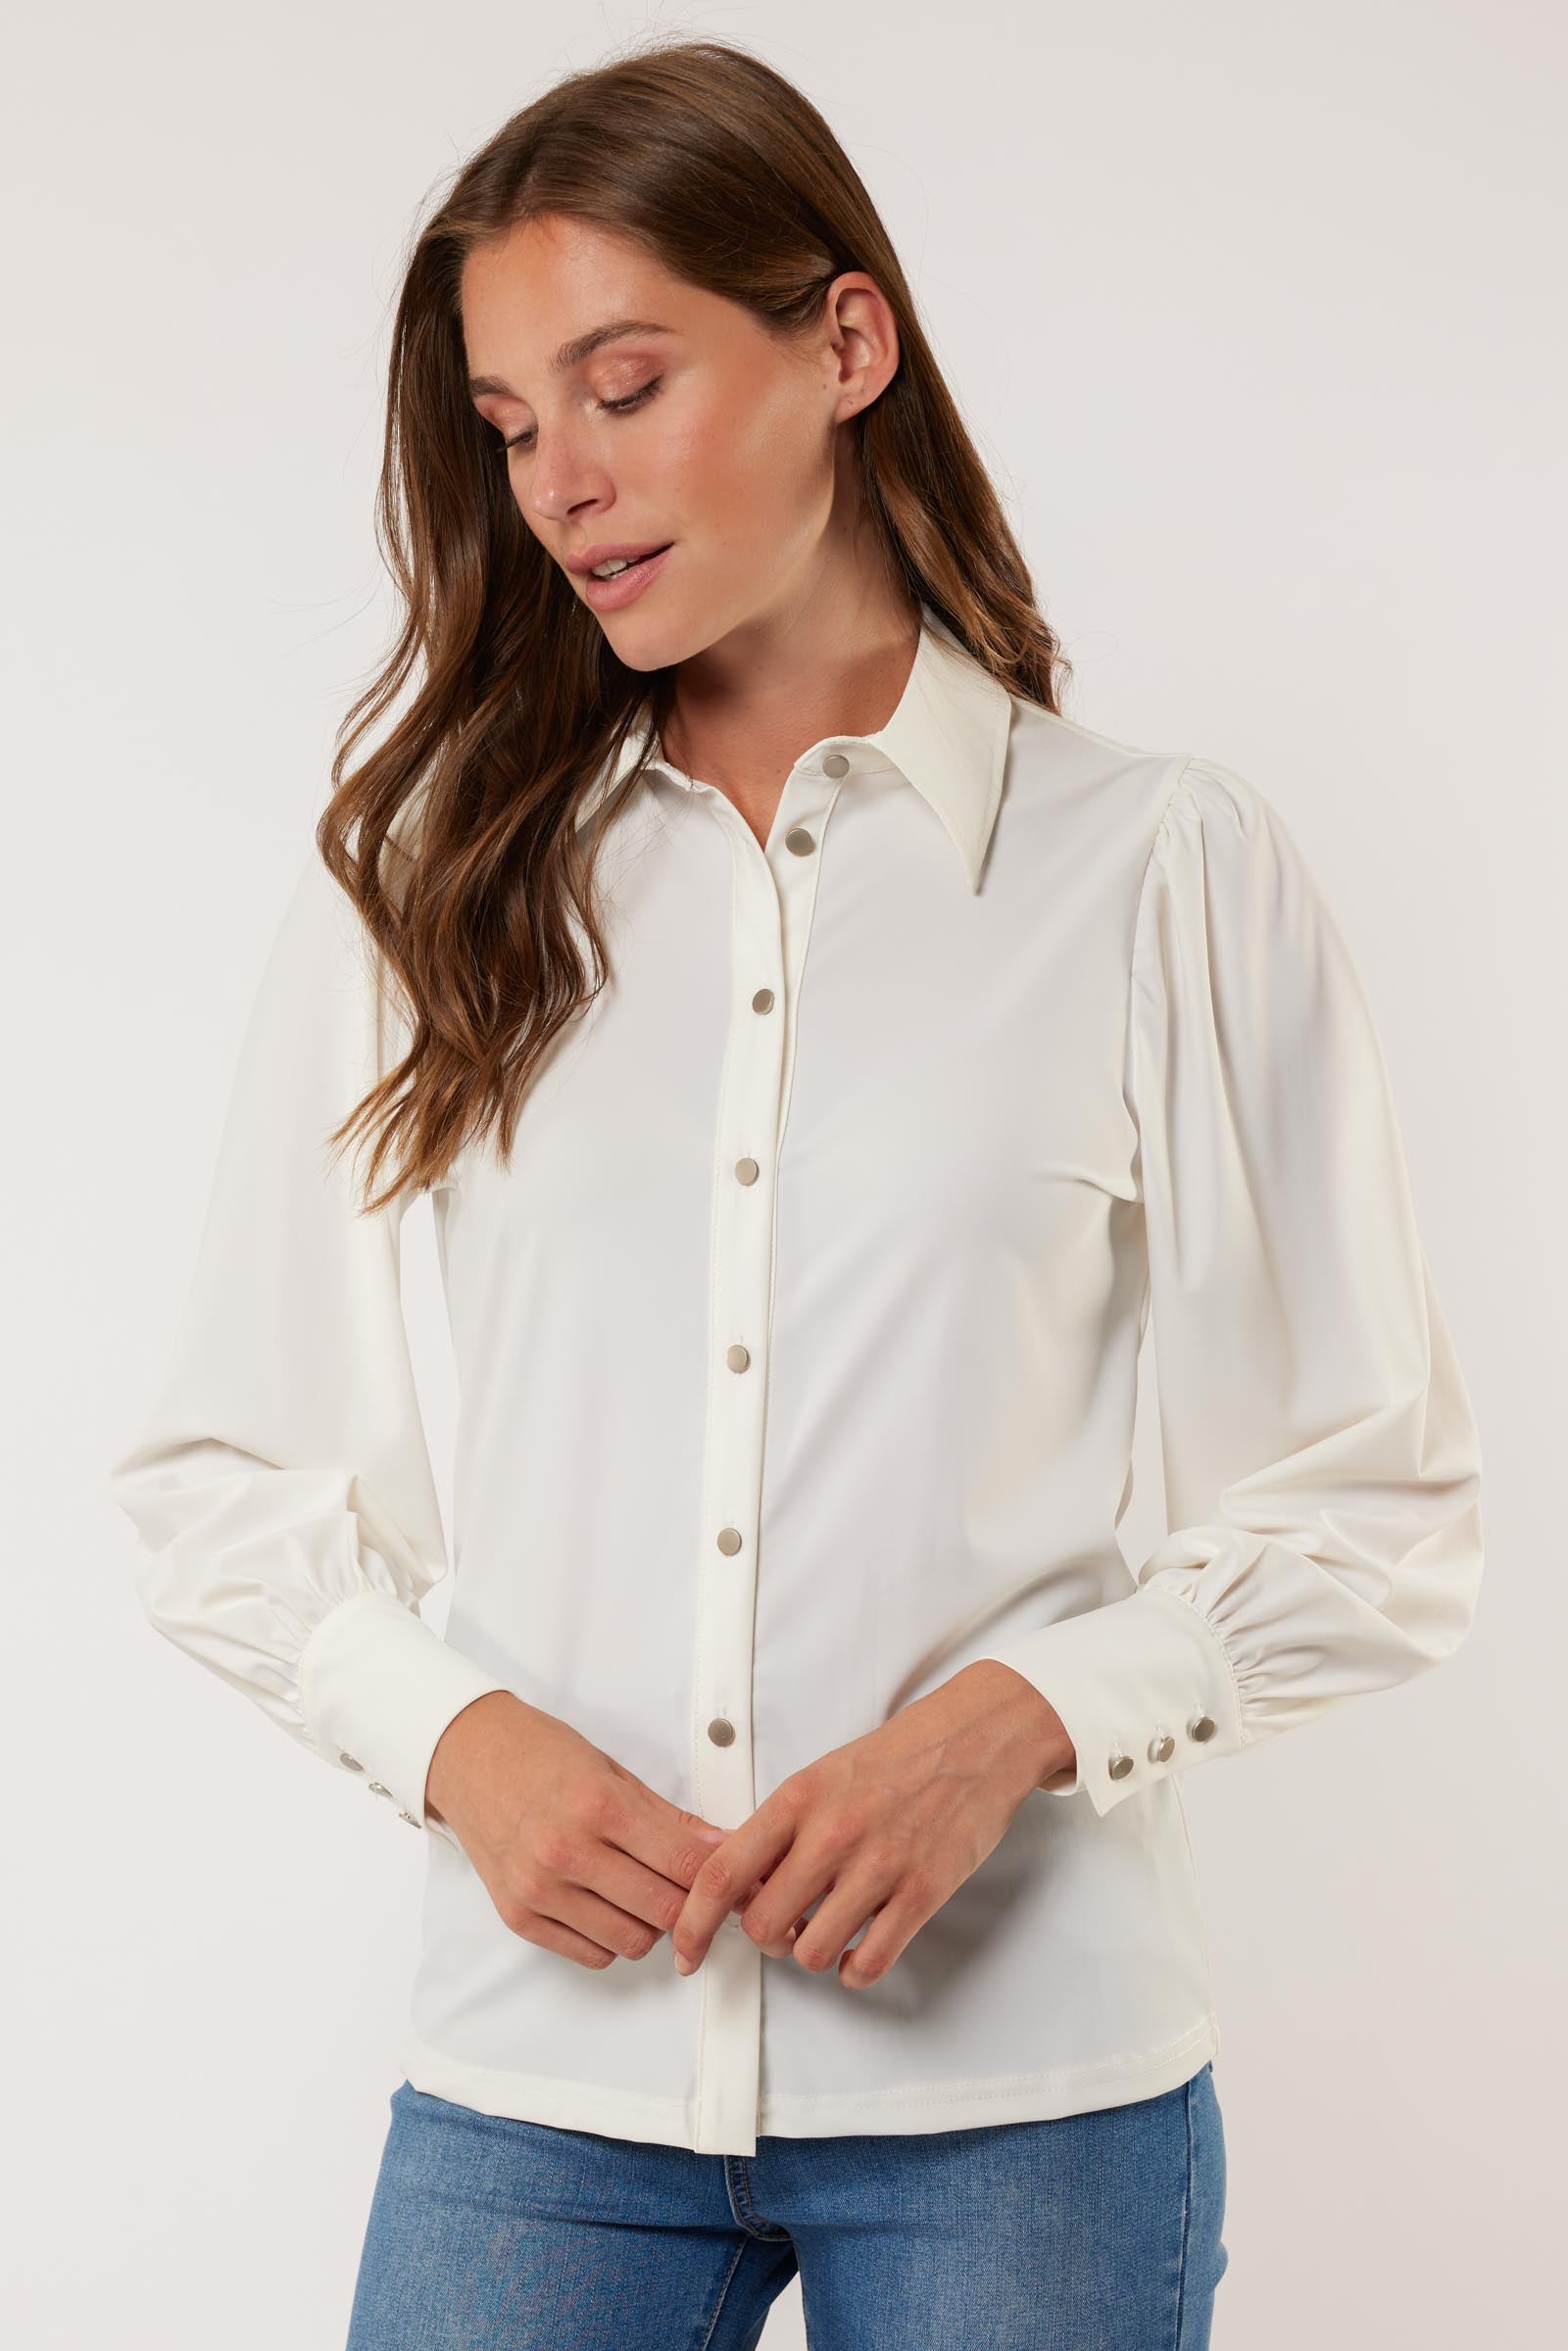 Gwynne blouse